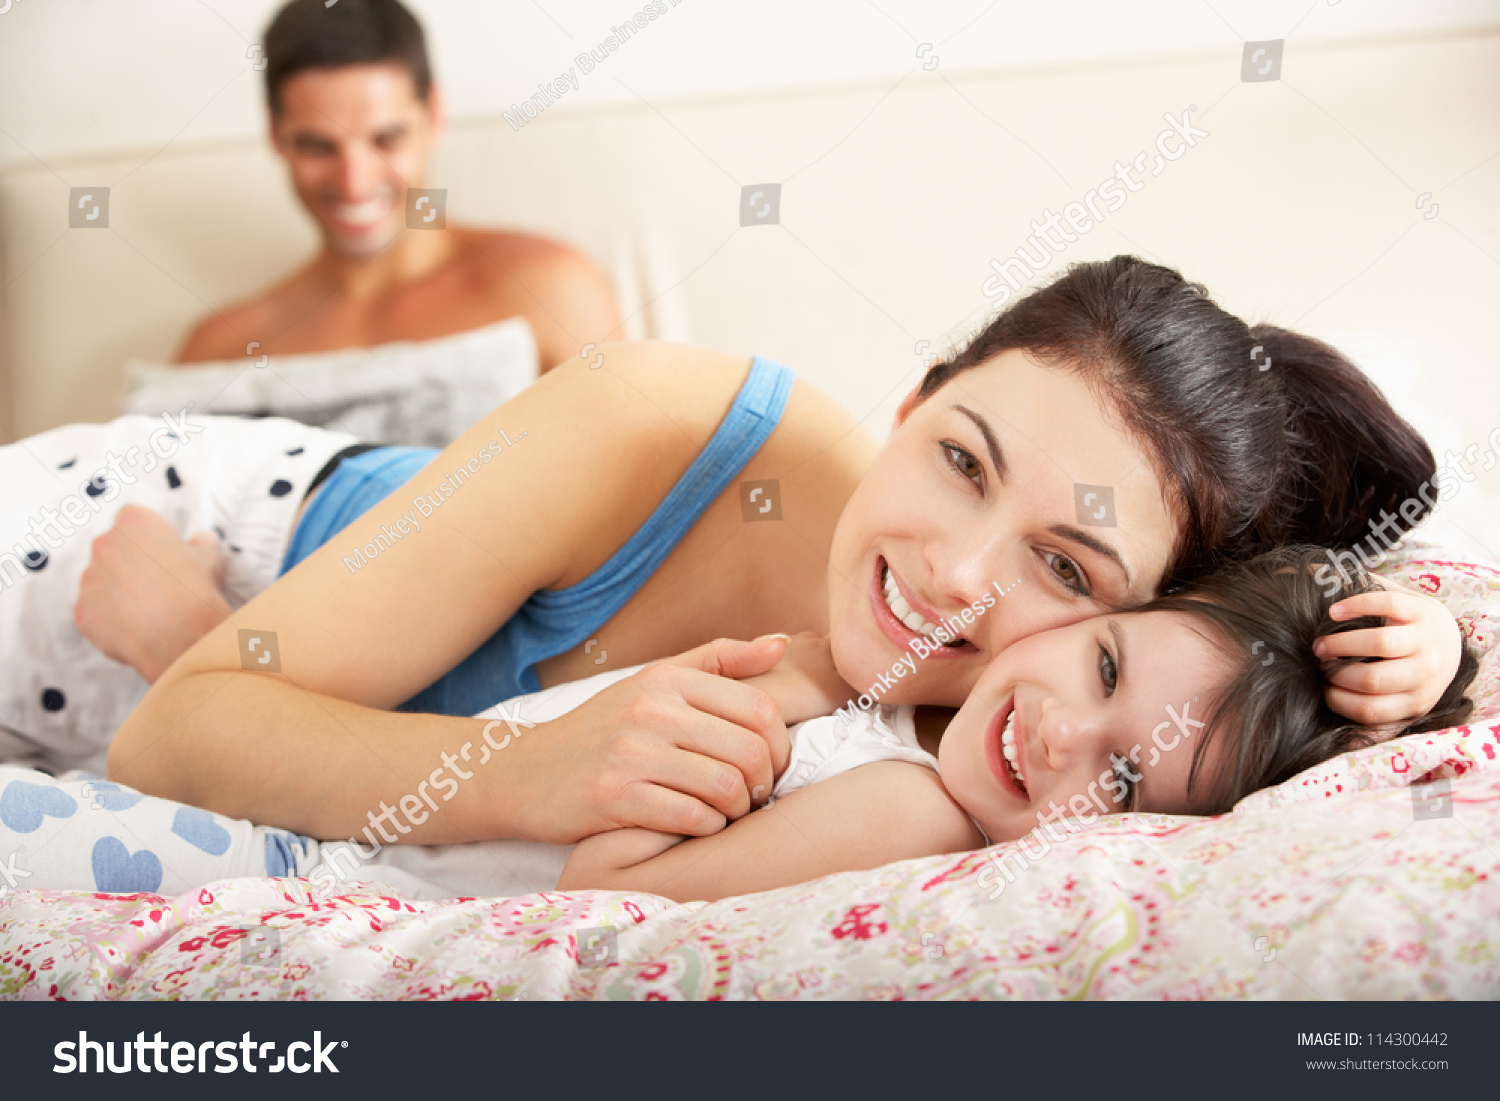 Мама с дочкой в постели. Мамас дочкой накрлвати. Мама с дочкой на кровати. Фотосессия дочь и мама взрослые в кровати. Фото мама с дочкой в постели.